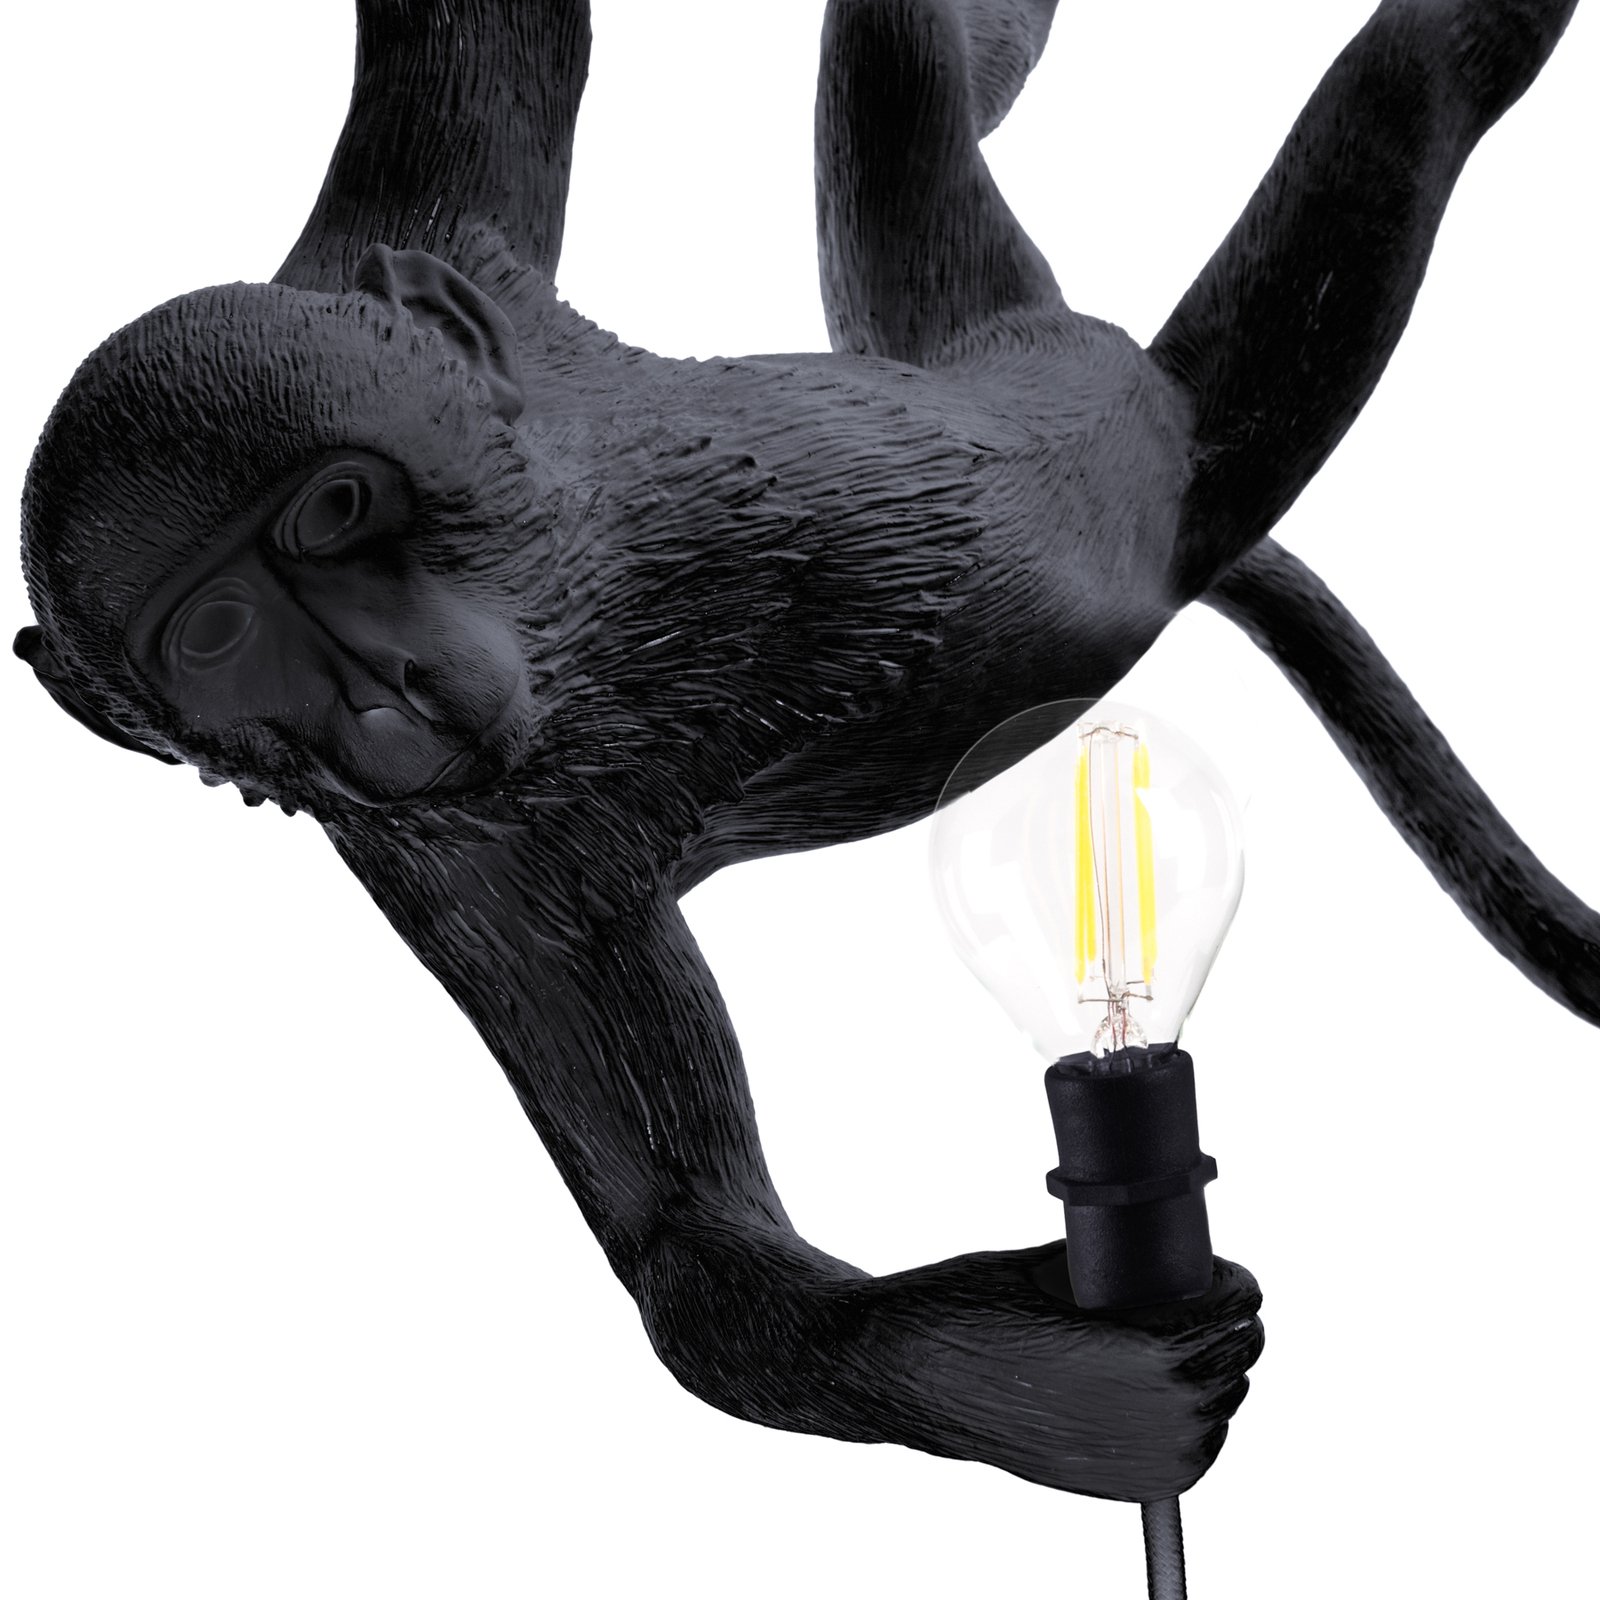 Suspension LED Monkey Lamp oscillante noire